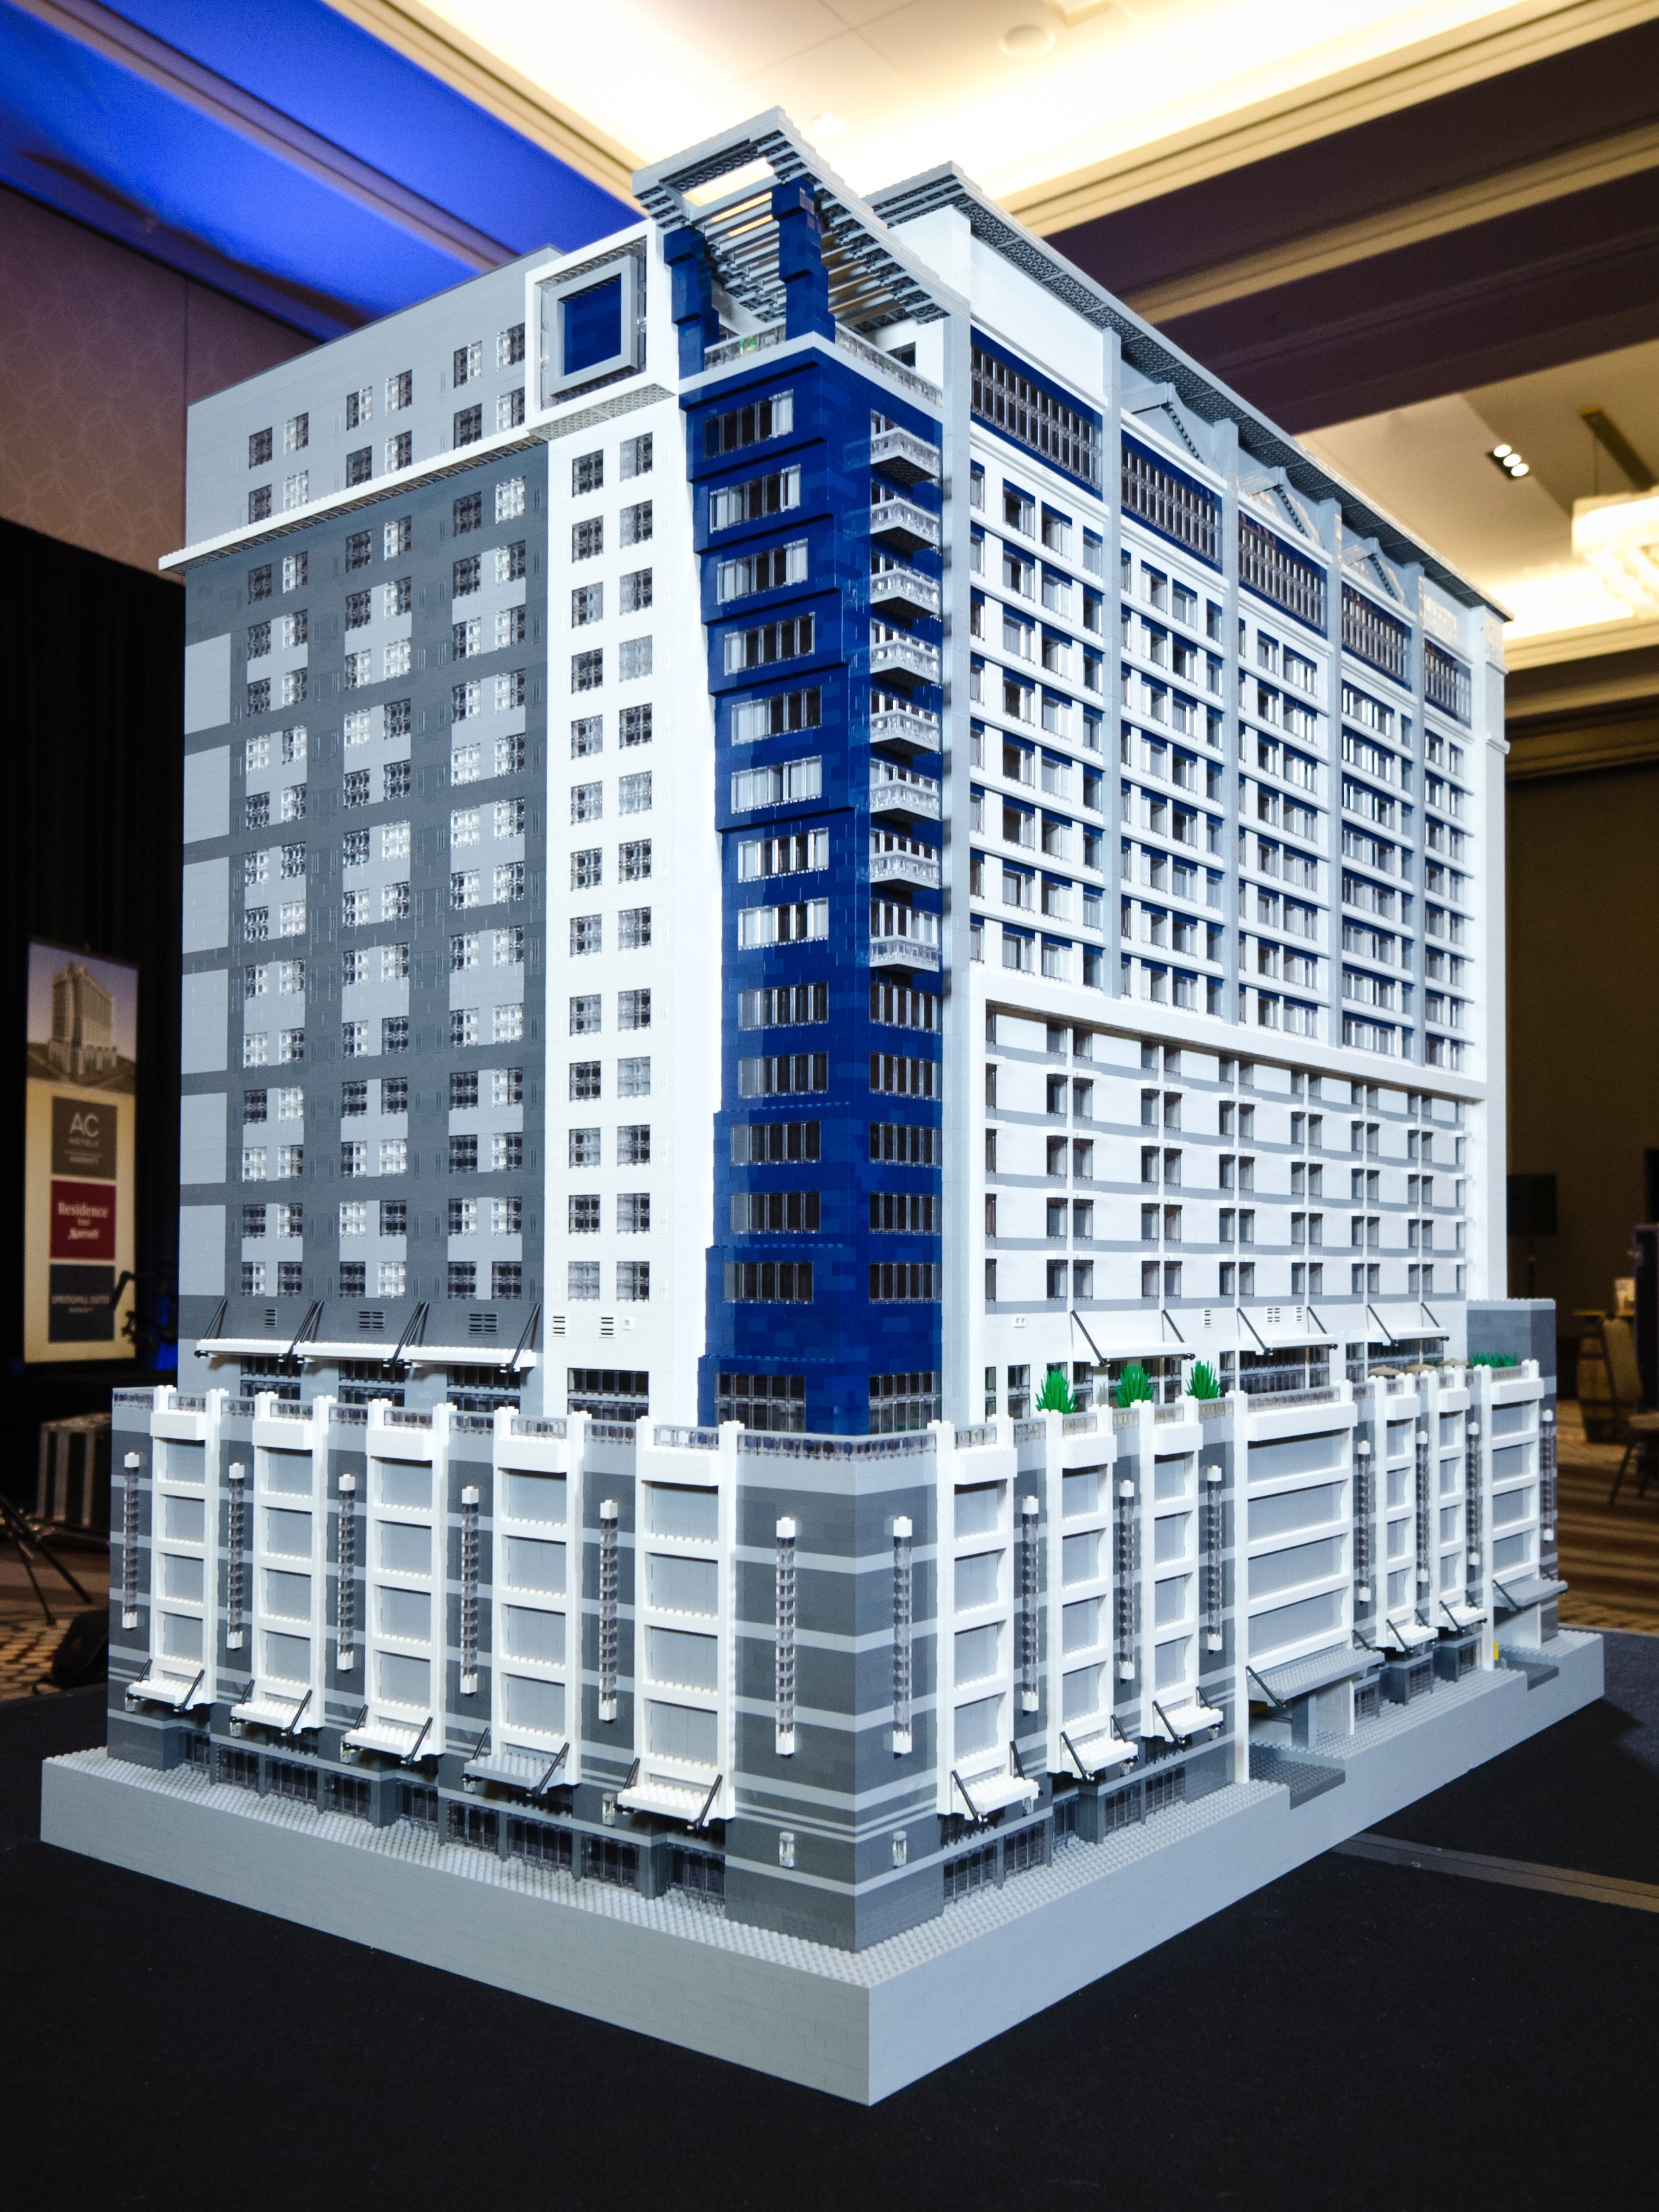 Neues Hotelkonzept als Lego-Modell - Witzige Idee zur Präsentation des ersten Drei-Marken-Konzepts von Marriott (Foto: North Point Hospitality)